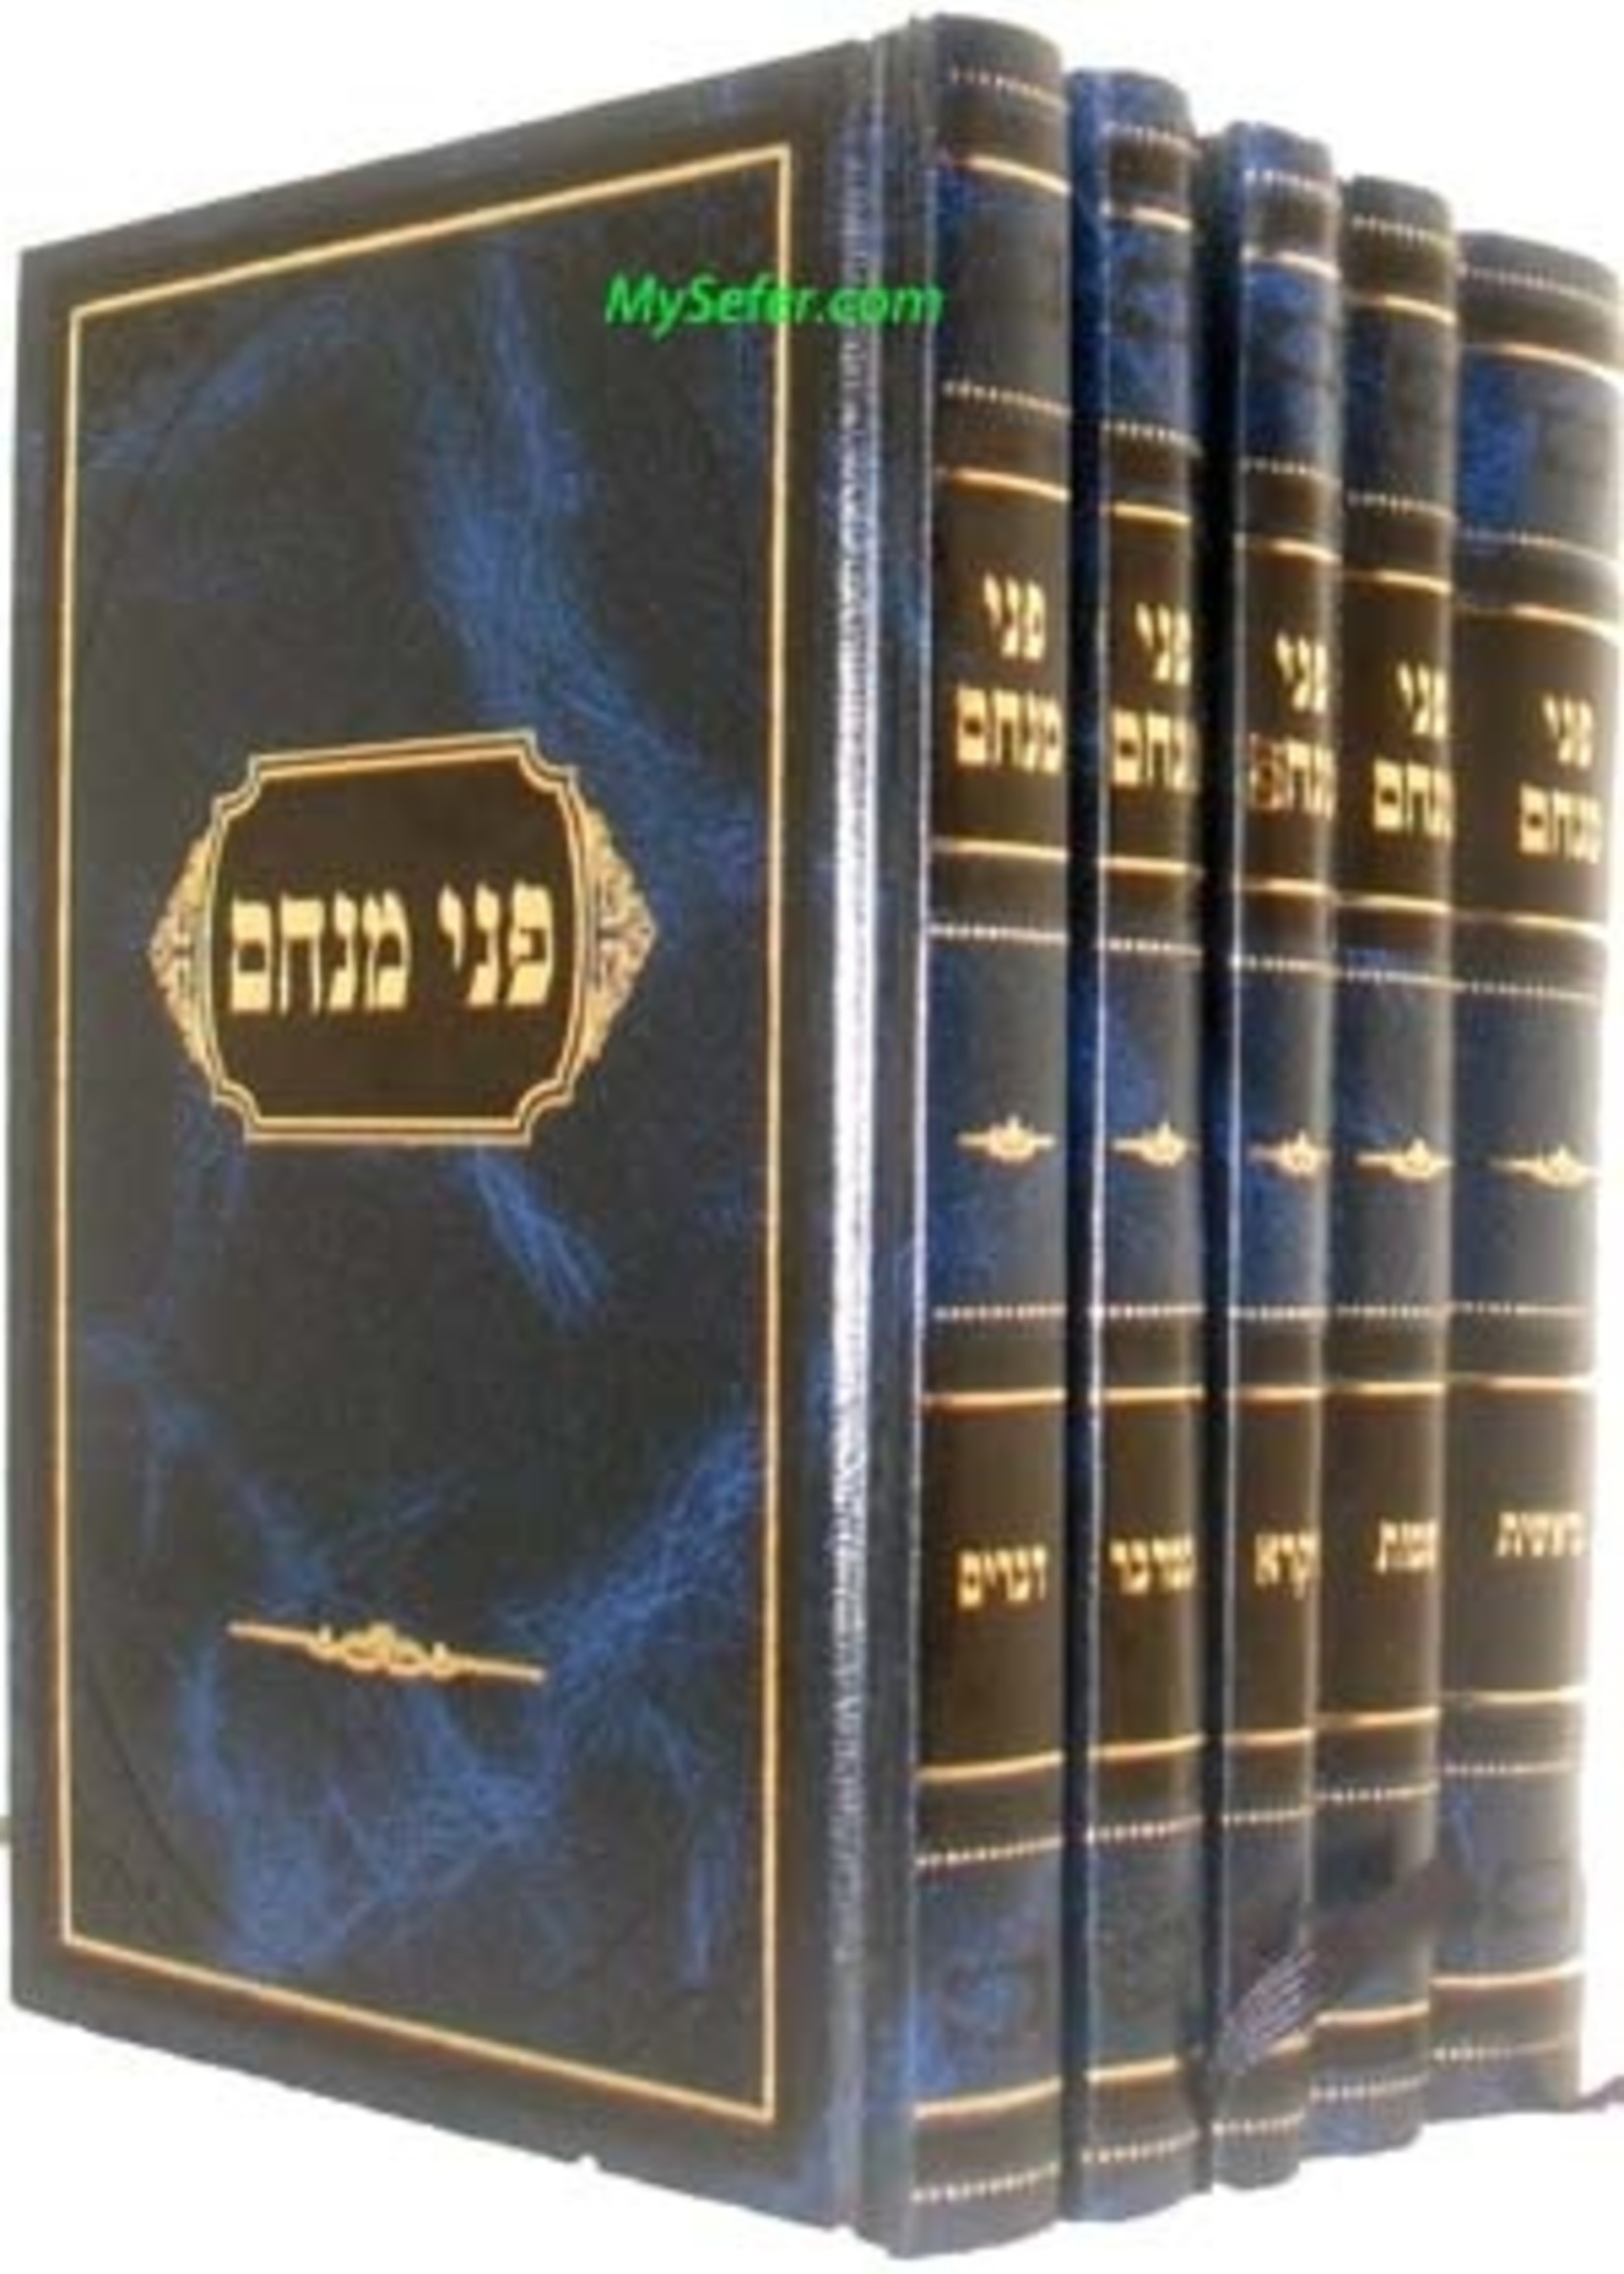 Pnei Menachem al haTorah (5 Vol - Small size)